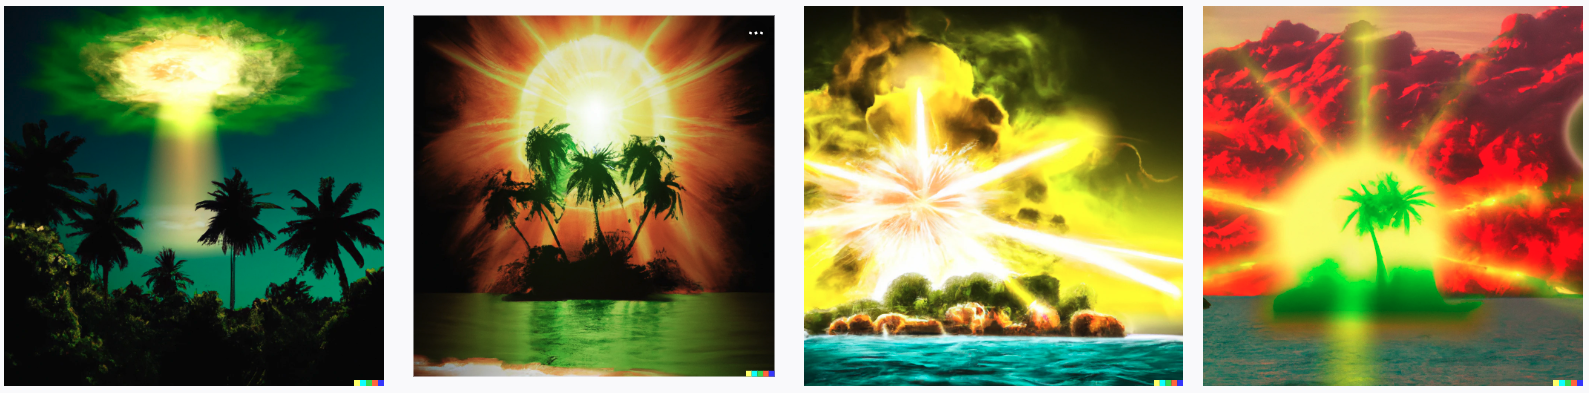 Dall.E A nuclear explosion on a tropical island as digital art